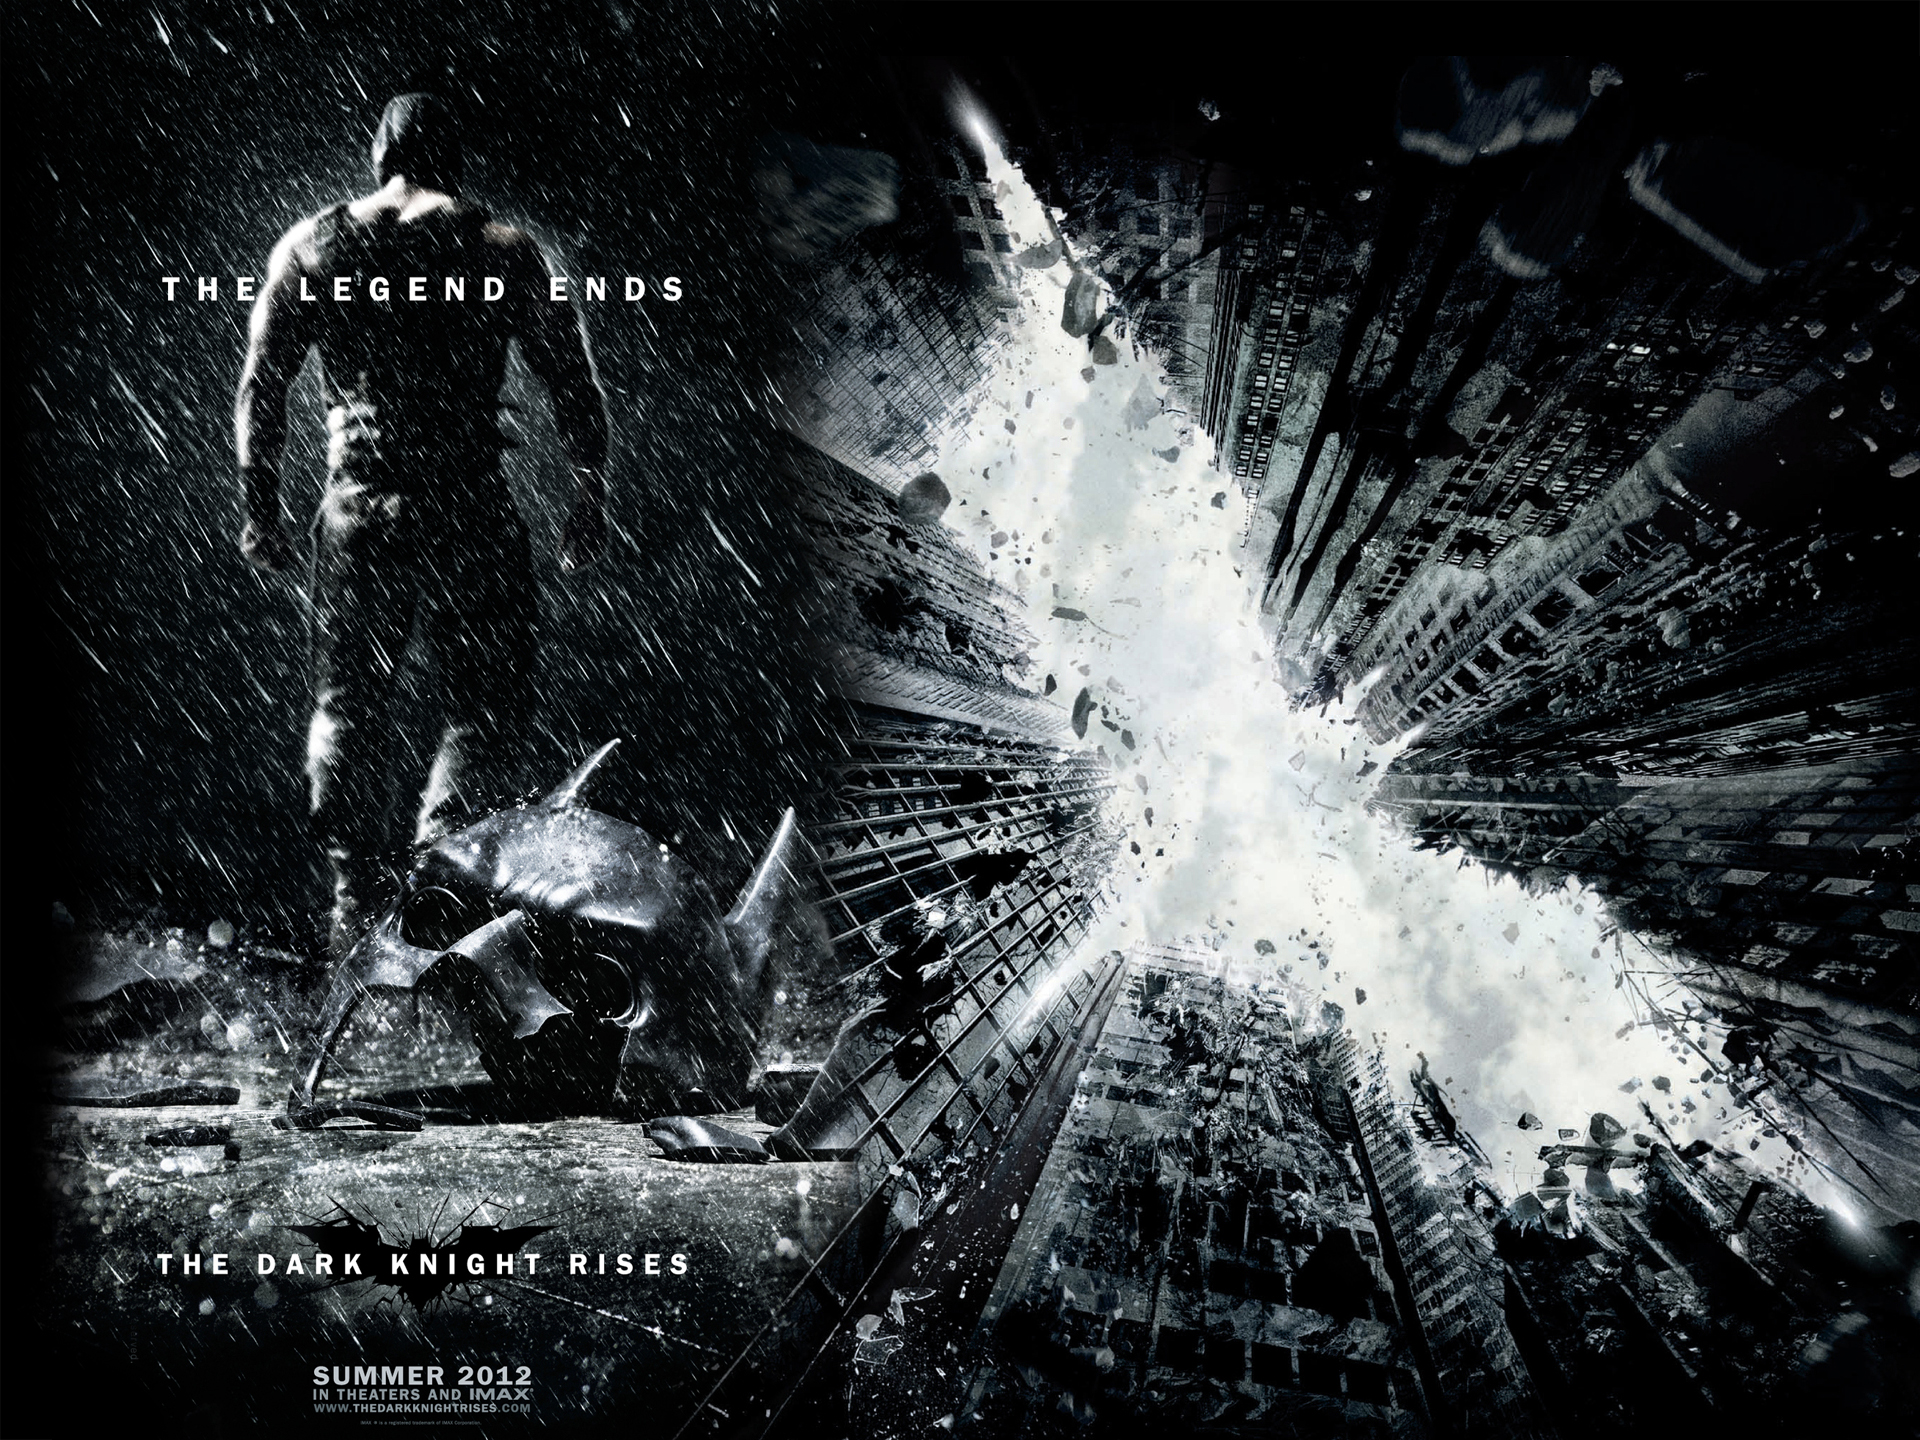 The Dark Knight Rises Wallpapers Full Hd - HD Wallpaper 